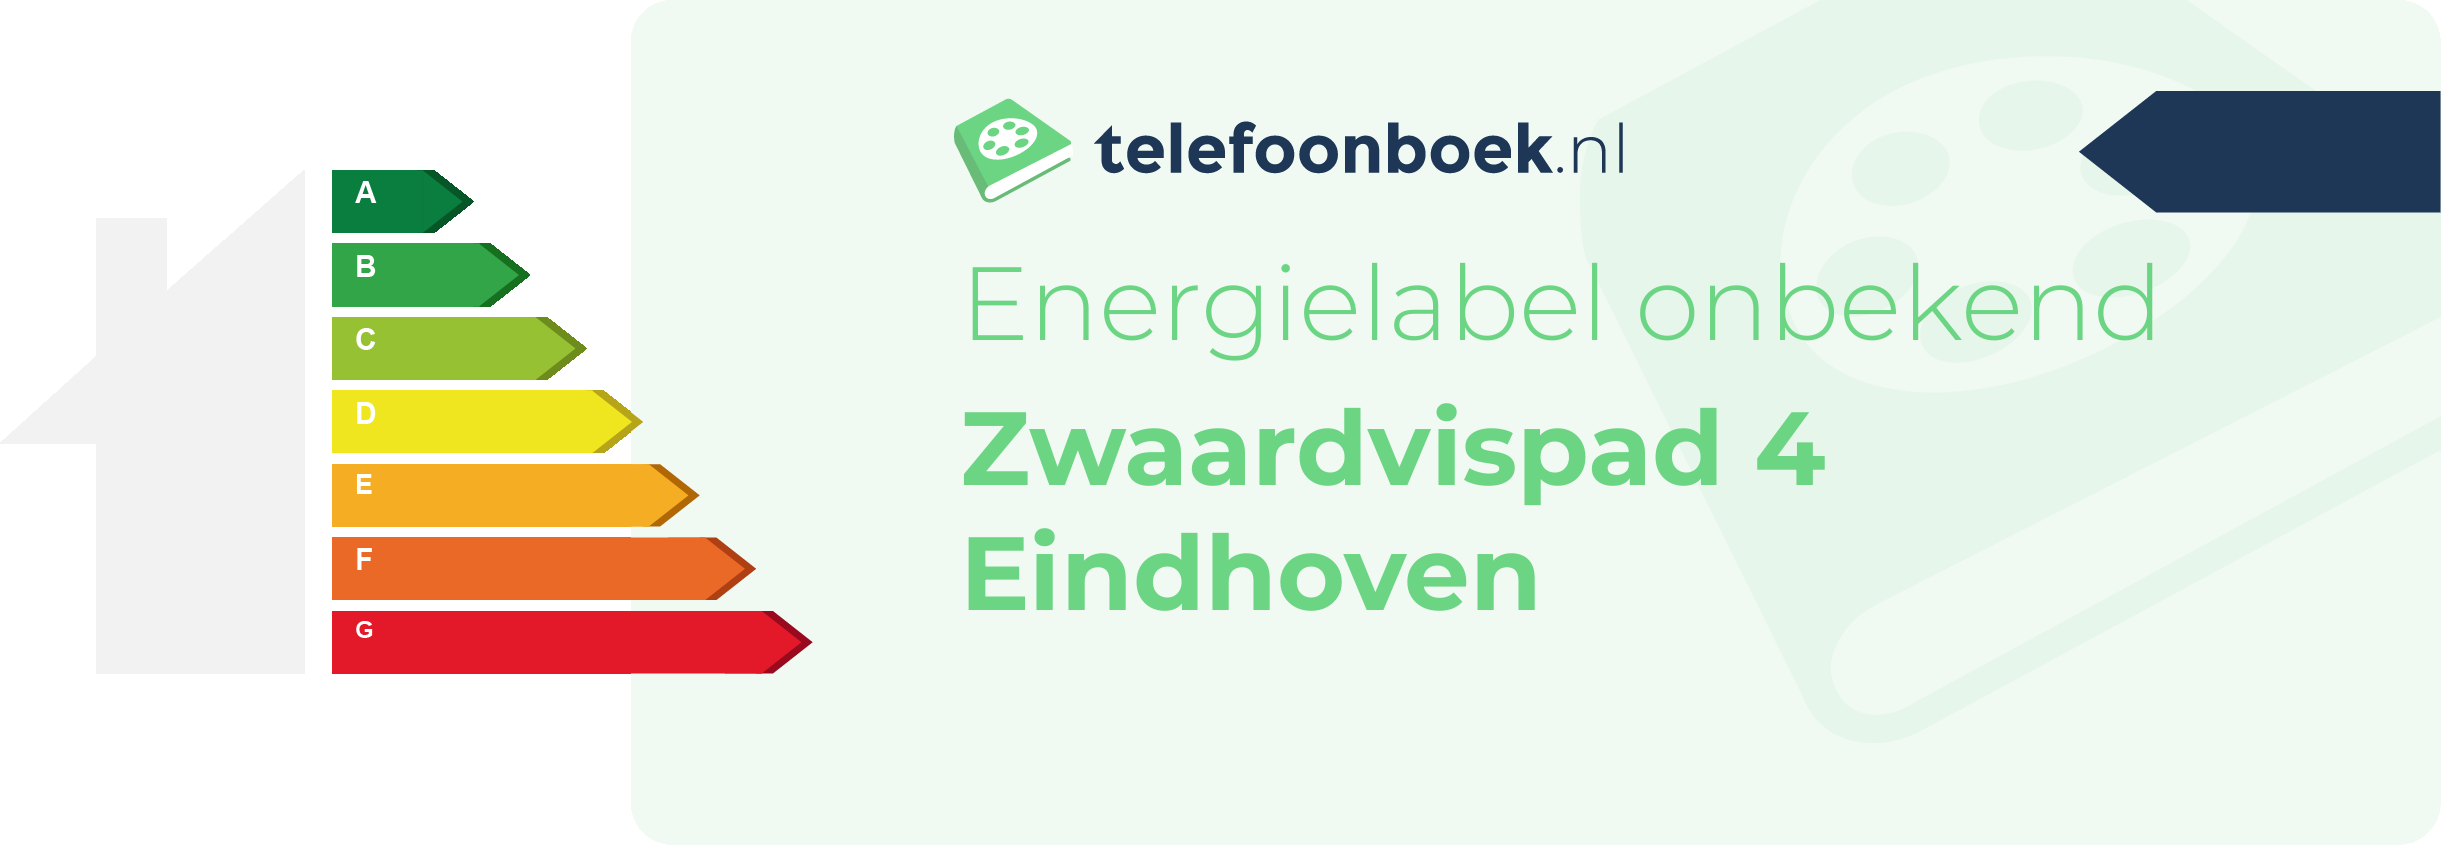 Energielabel Zwaardvispad 4 Eindhoven